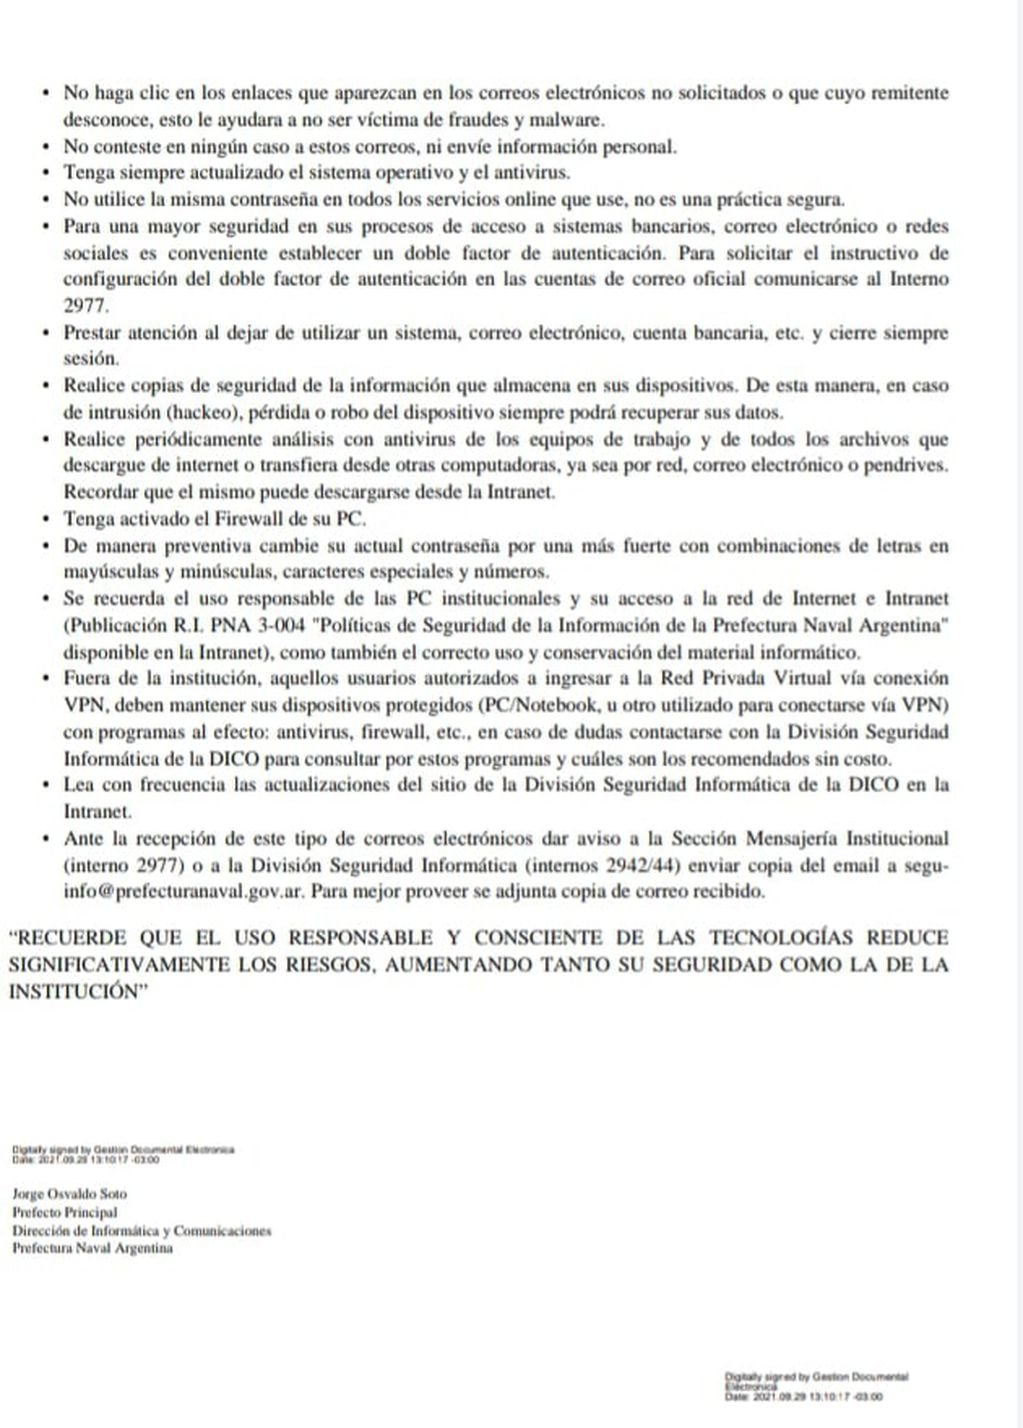 Documento de Seguridad de la Nación Argentina